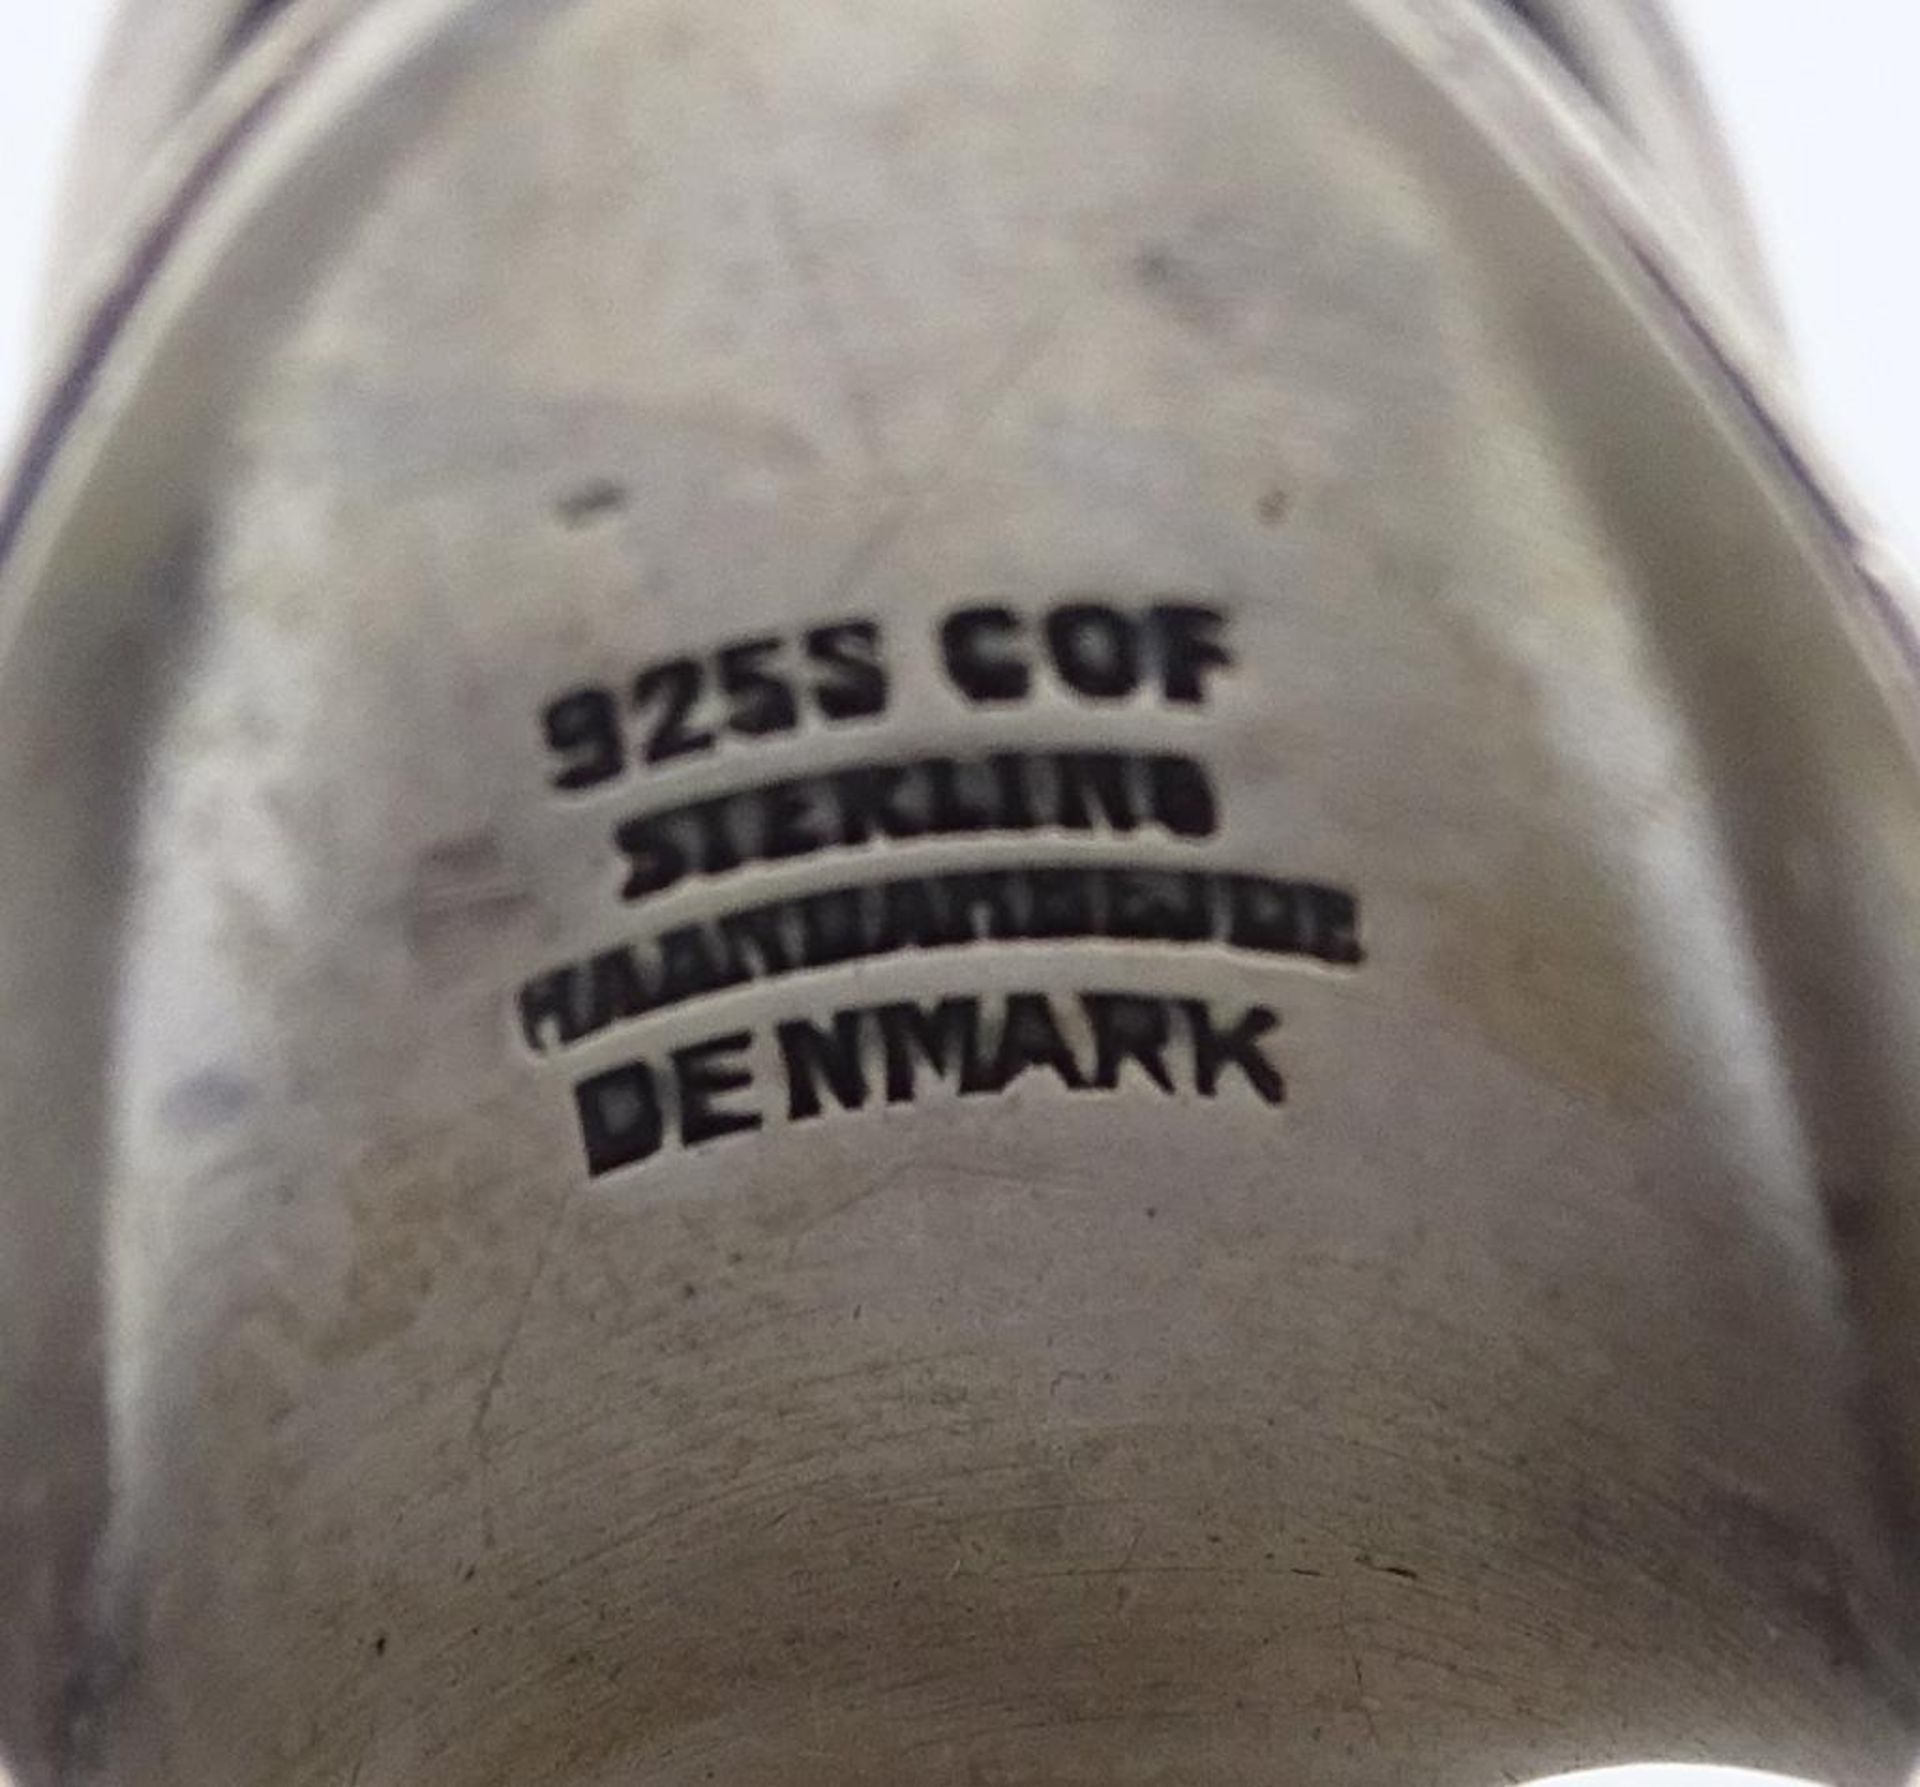 925er Silber Ring,Denmark,Bernstein Besatz ,11,20gr.RG 54 - Bild 4 aus 4